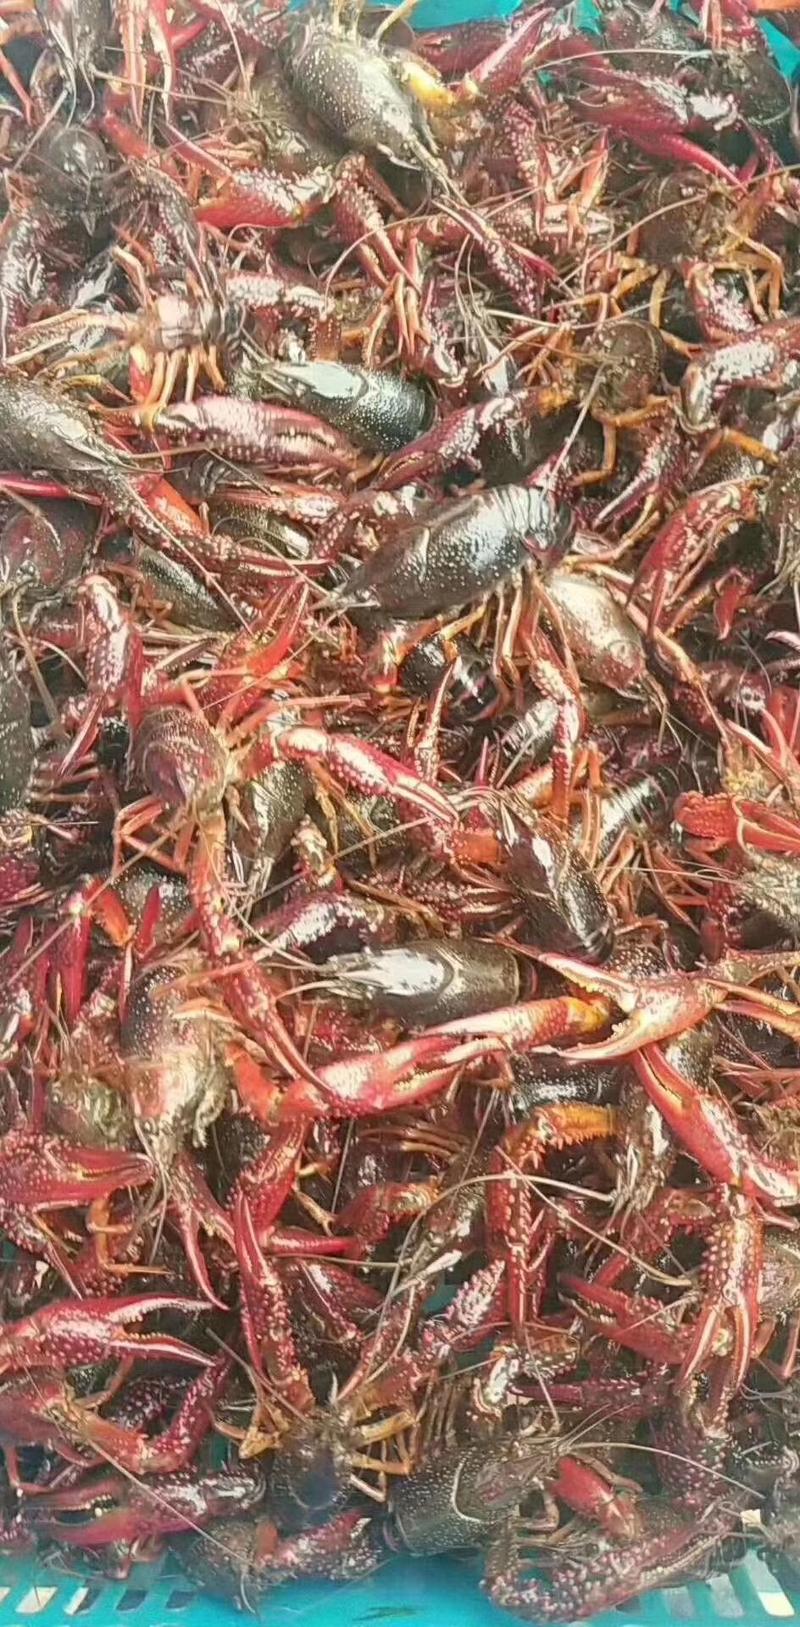 渔场直供优质小龙虾苗及成品虾品质保证淡水专业技术养殖